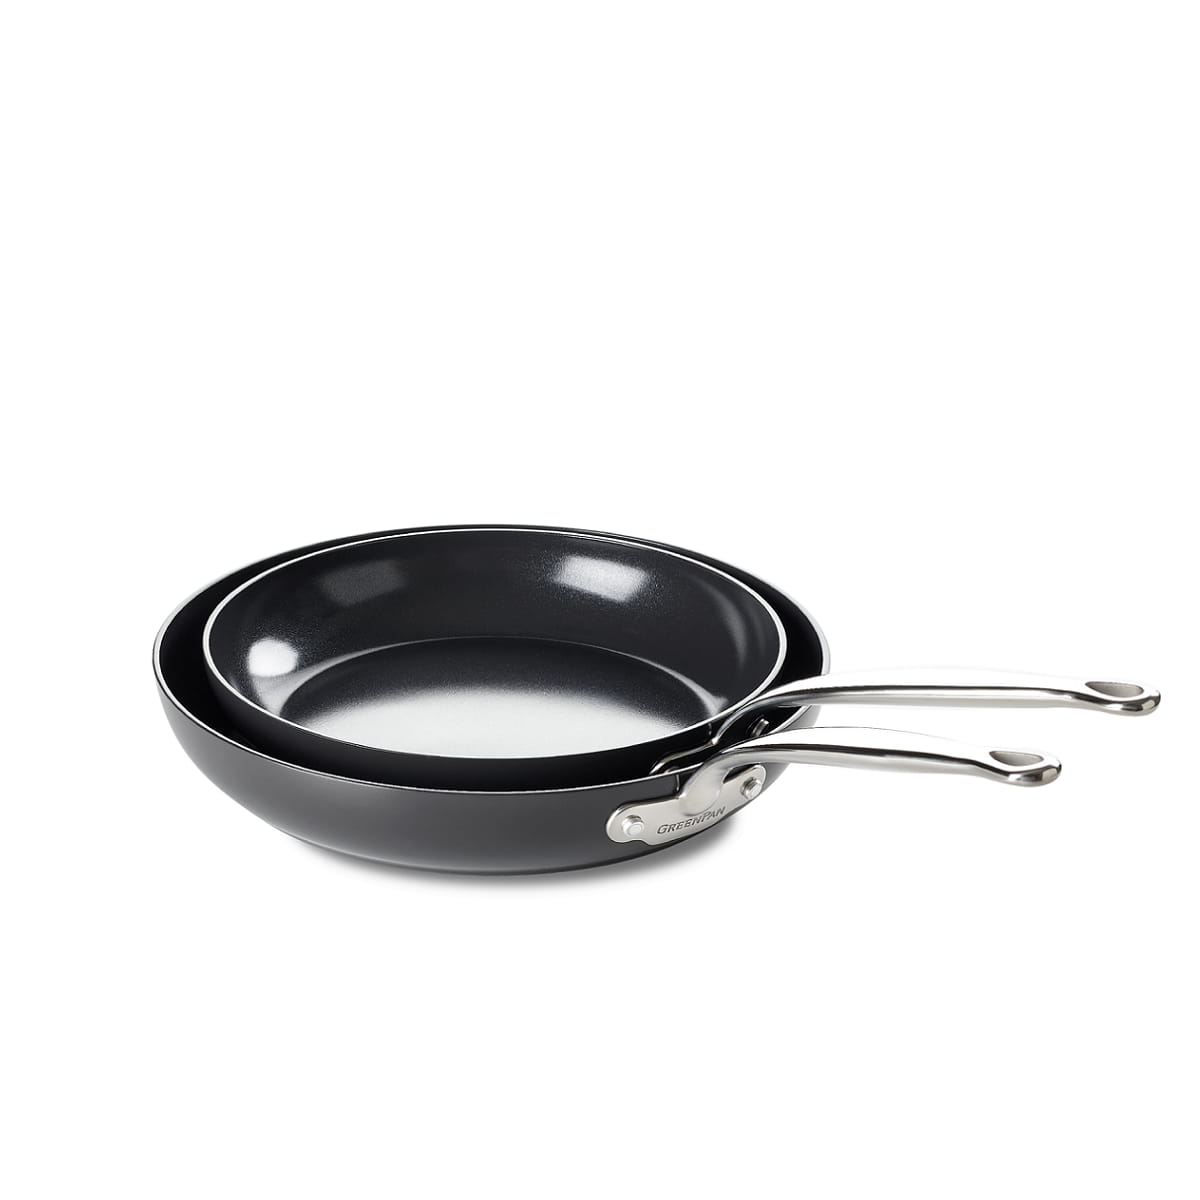 CC000082-001 - Barcelona 2pc Cookware Sets, Black - 24 & 28cm - Product Image 1